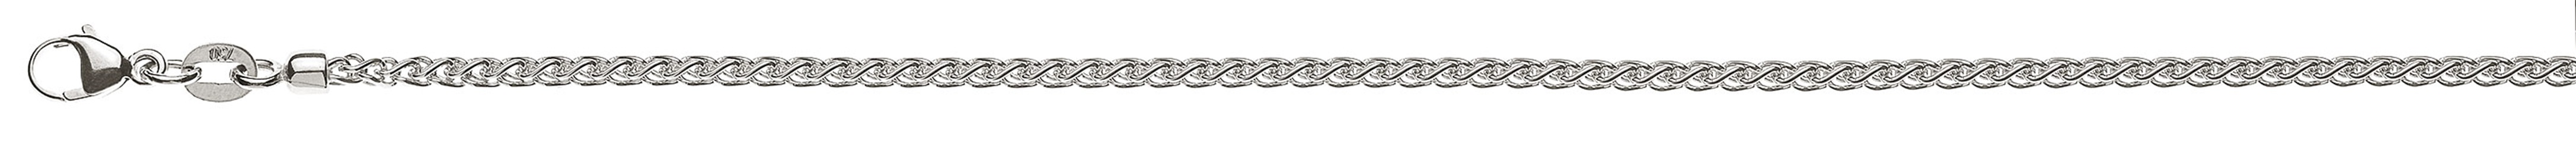 AURONOS Prestige Necklace white gold 18K cable chain 45cm 2.15mm